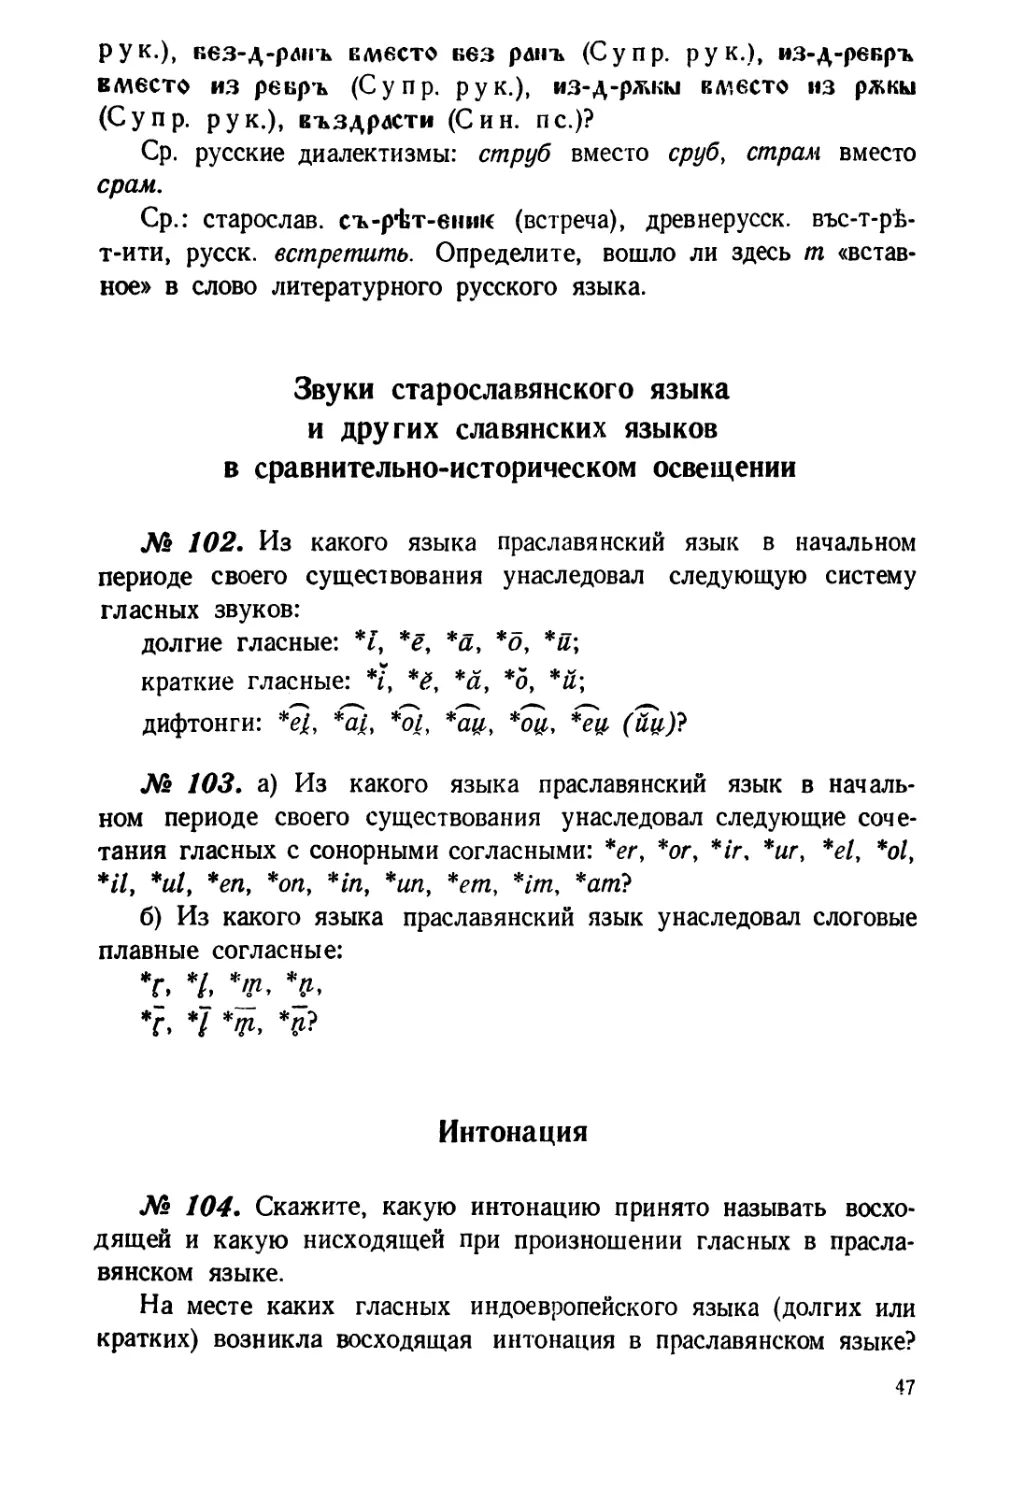 Звуки старославянского языка и других славянских языков в сравнительно-историческом освещении
Интонация